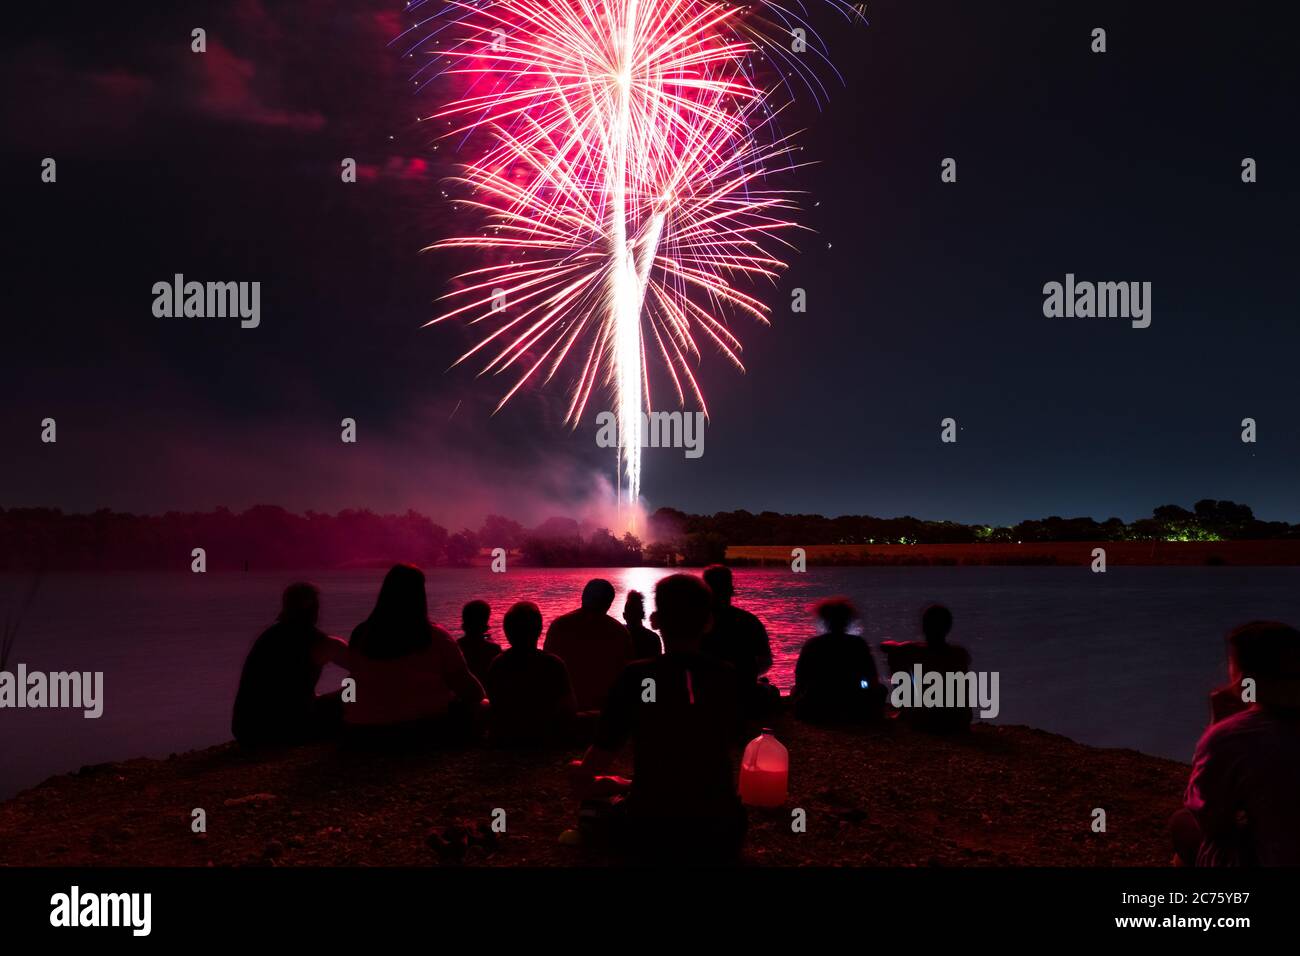 Sherman, TX / Stati Uniti - 3 luglio 2020: L'undicesima edizione di Lights on the Lake è ospitata al Pecan Grove Park il 3 luglio. Foto Stock